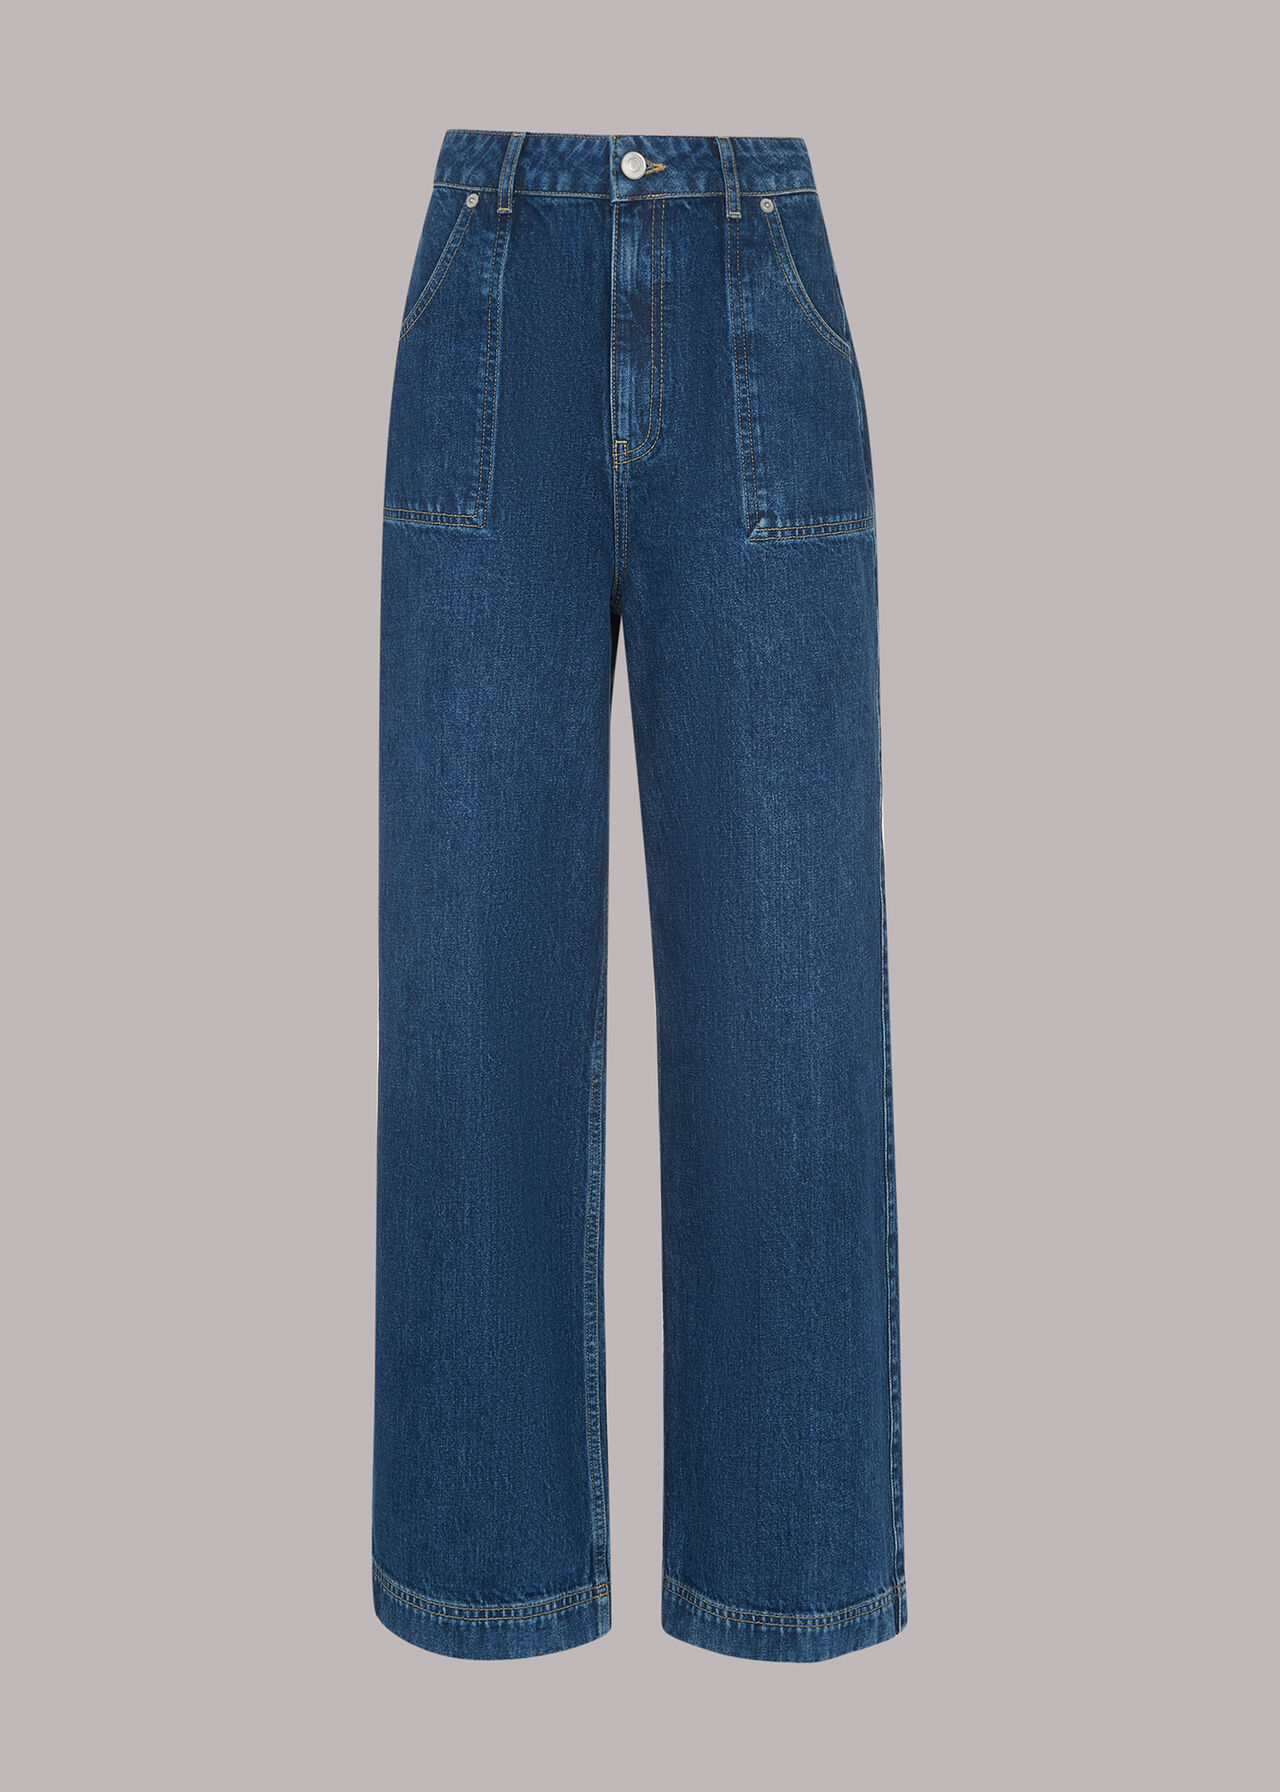 Classic Blue Jean